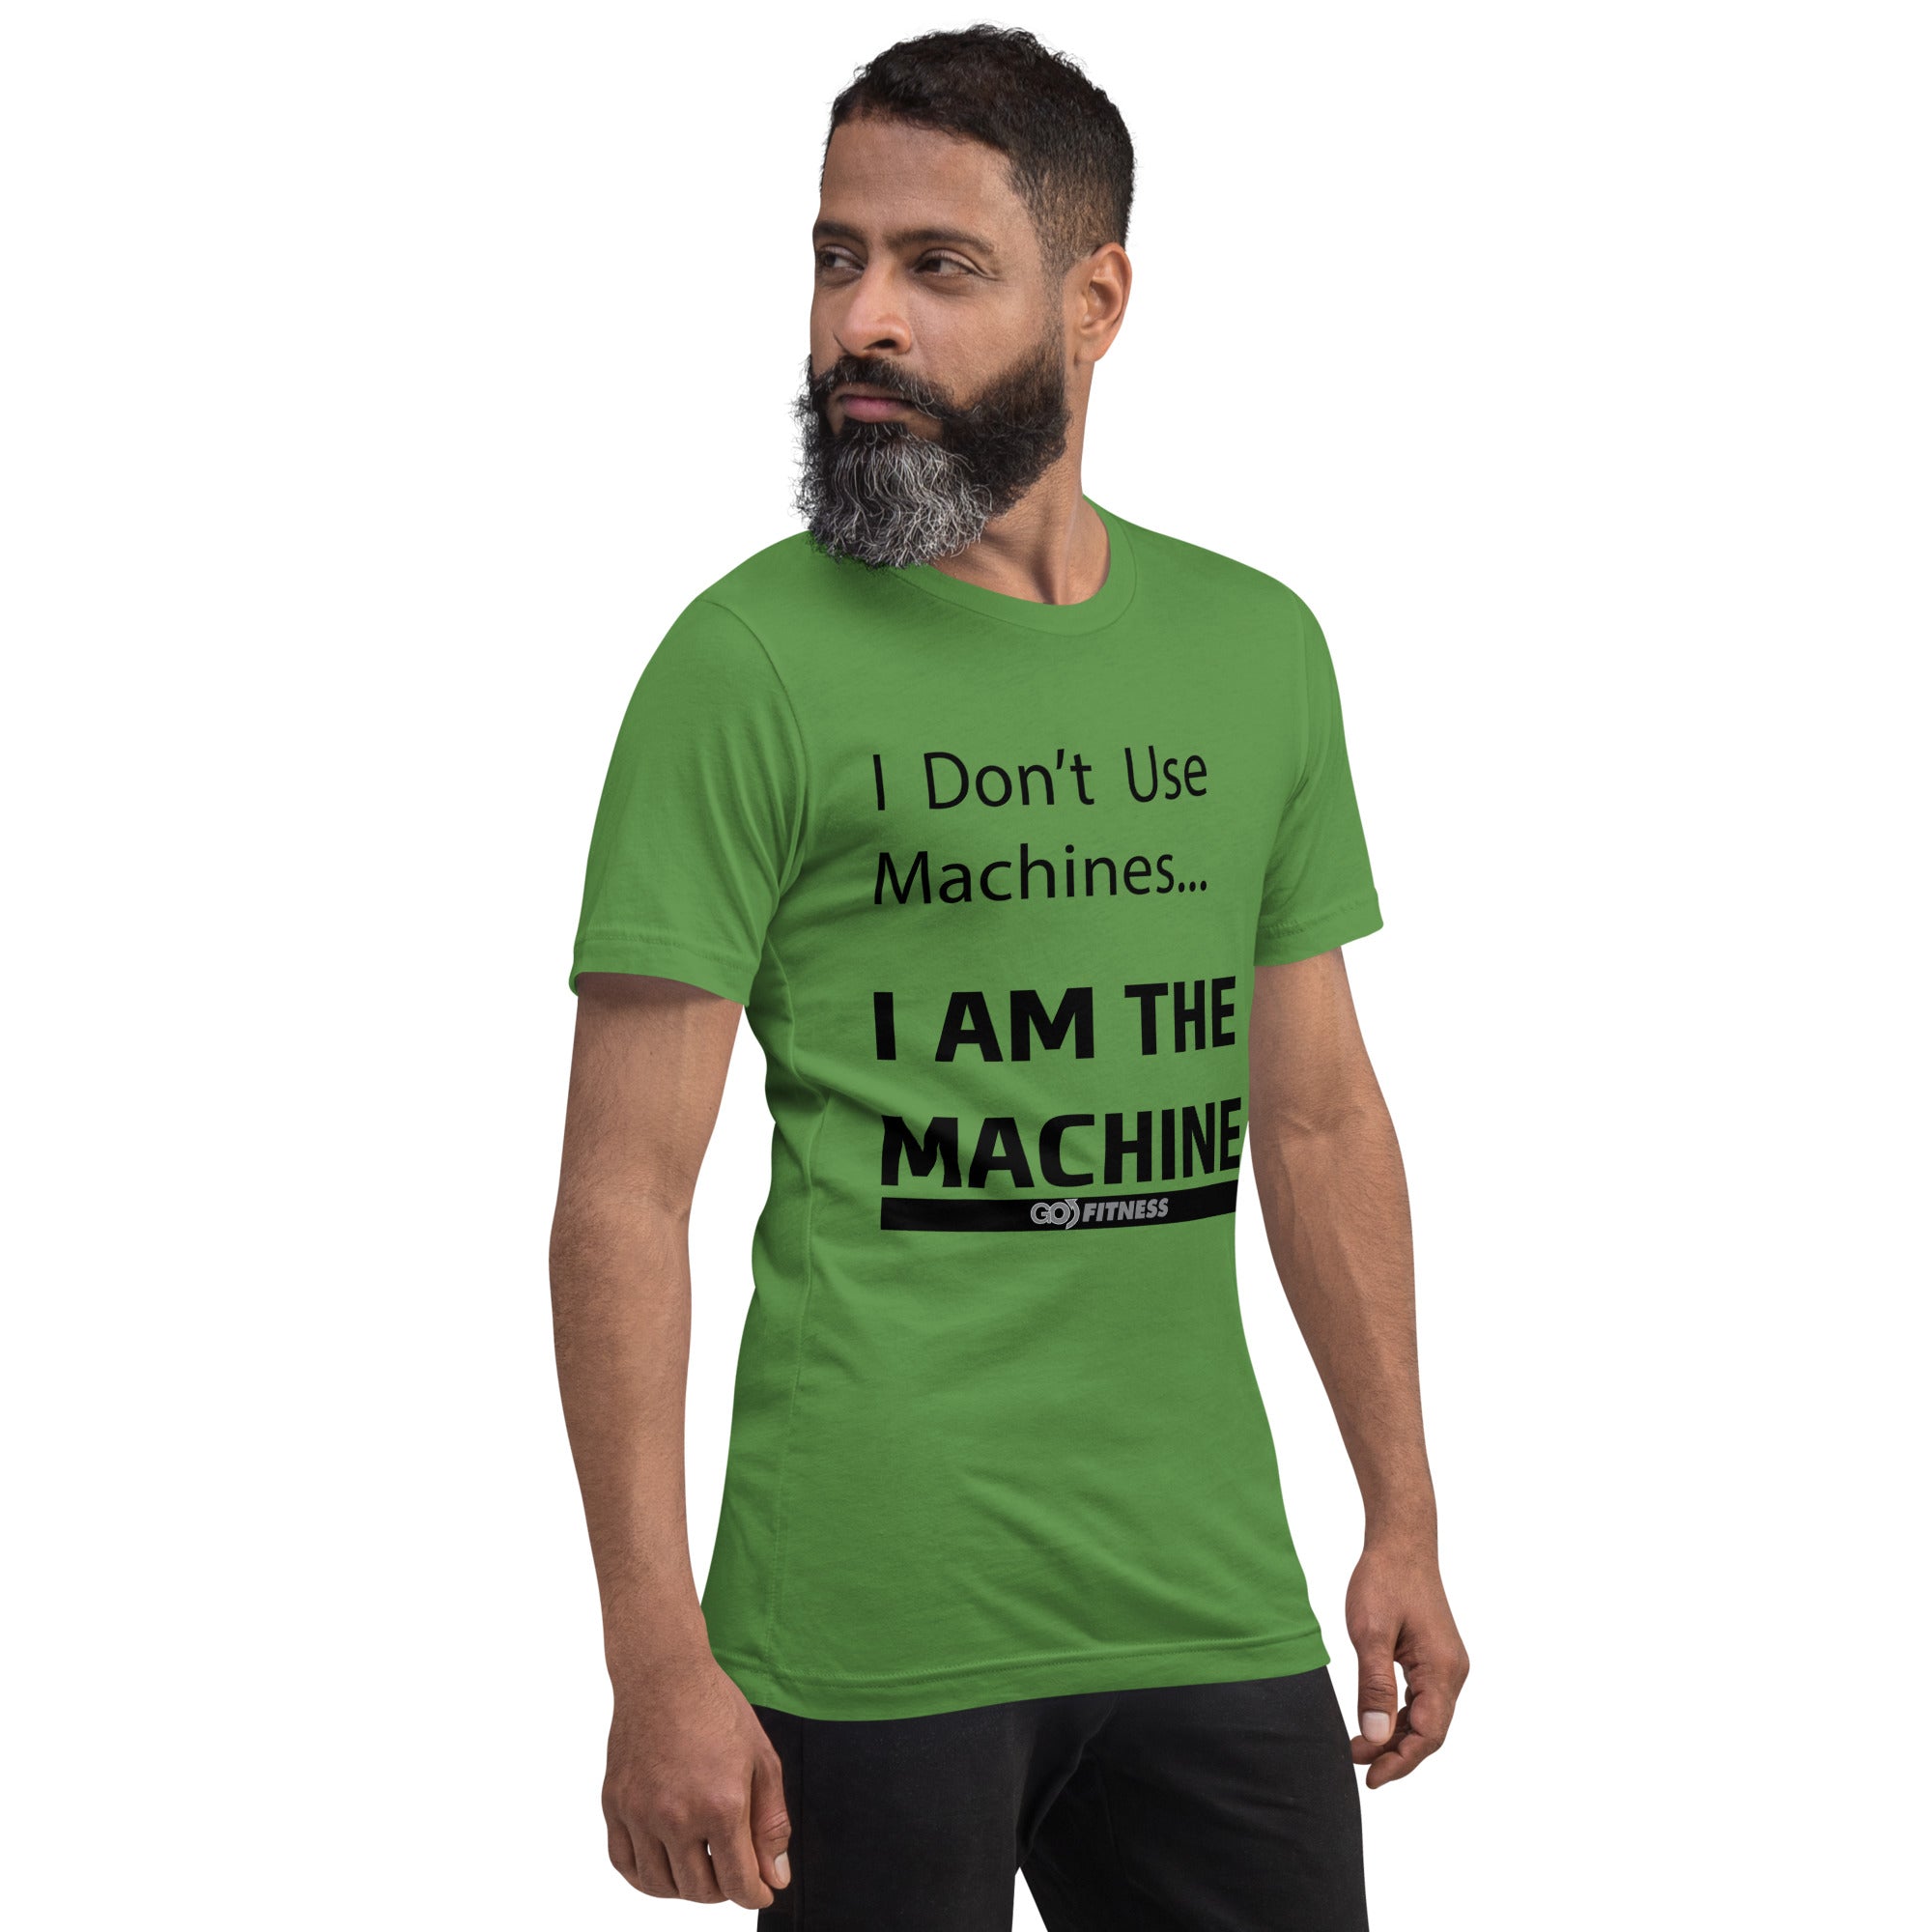 "I am the Machine" Unisex t-shirt